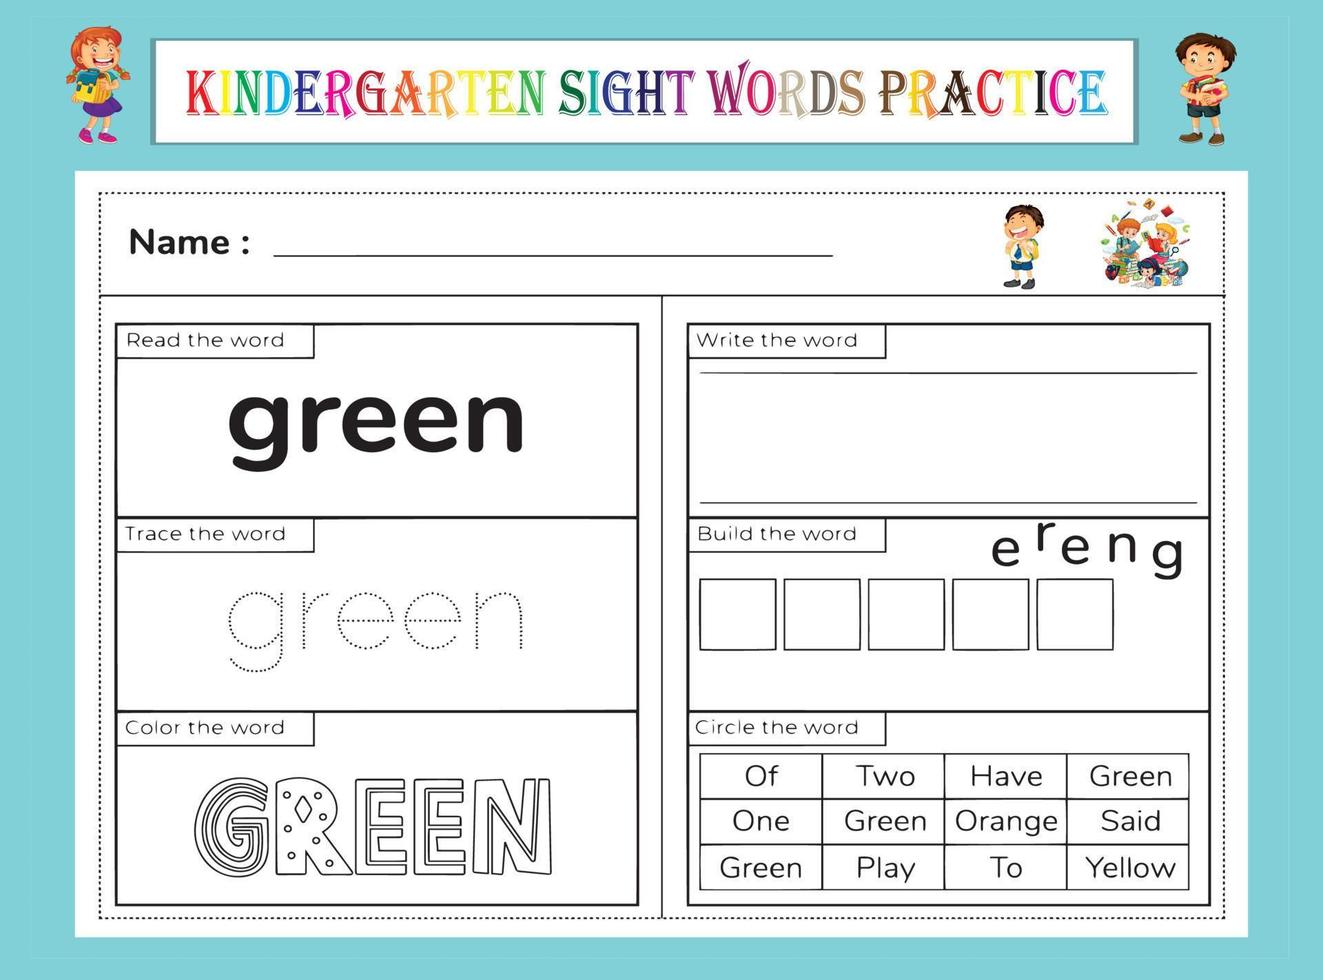 Arbeitsblatt zum Üben von Sichtwörtern im Kindergarten vektor